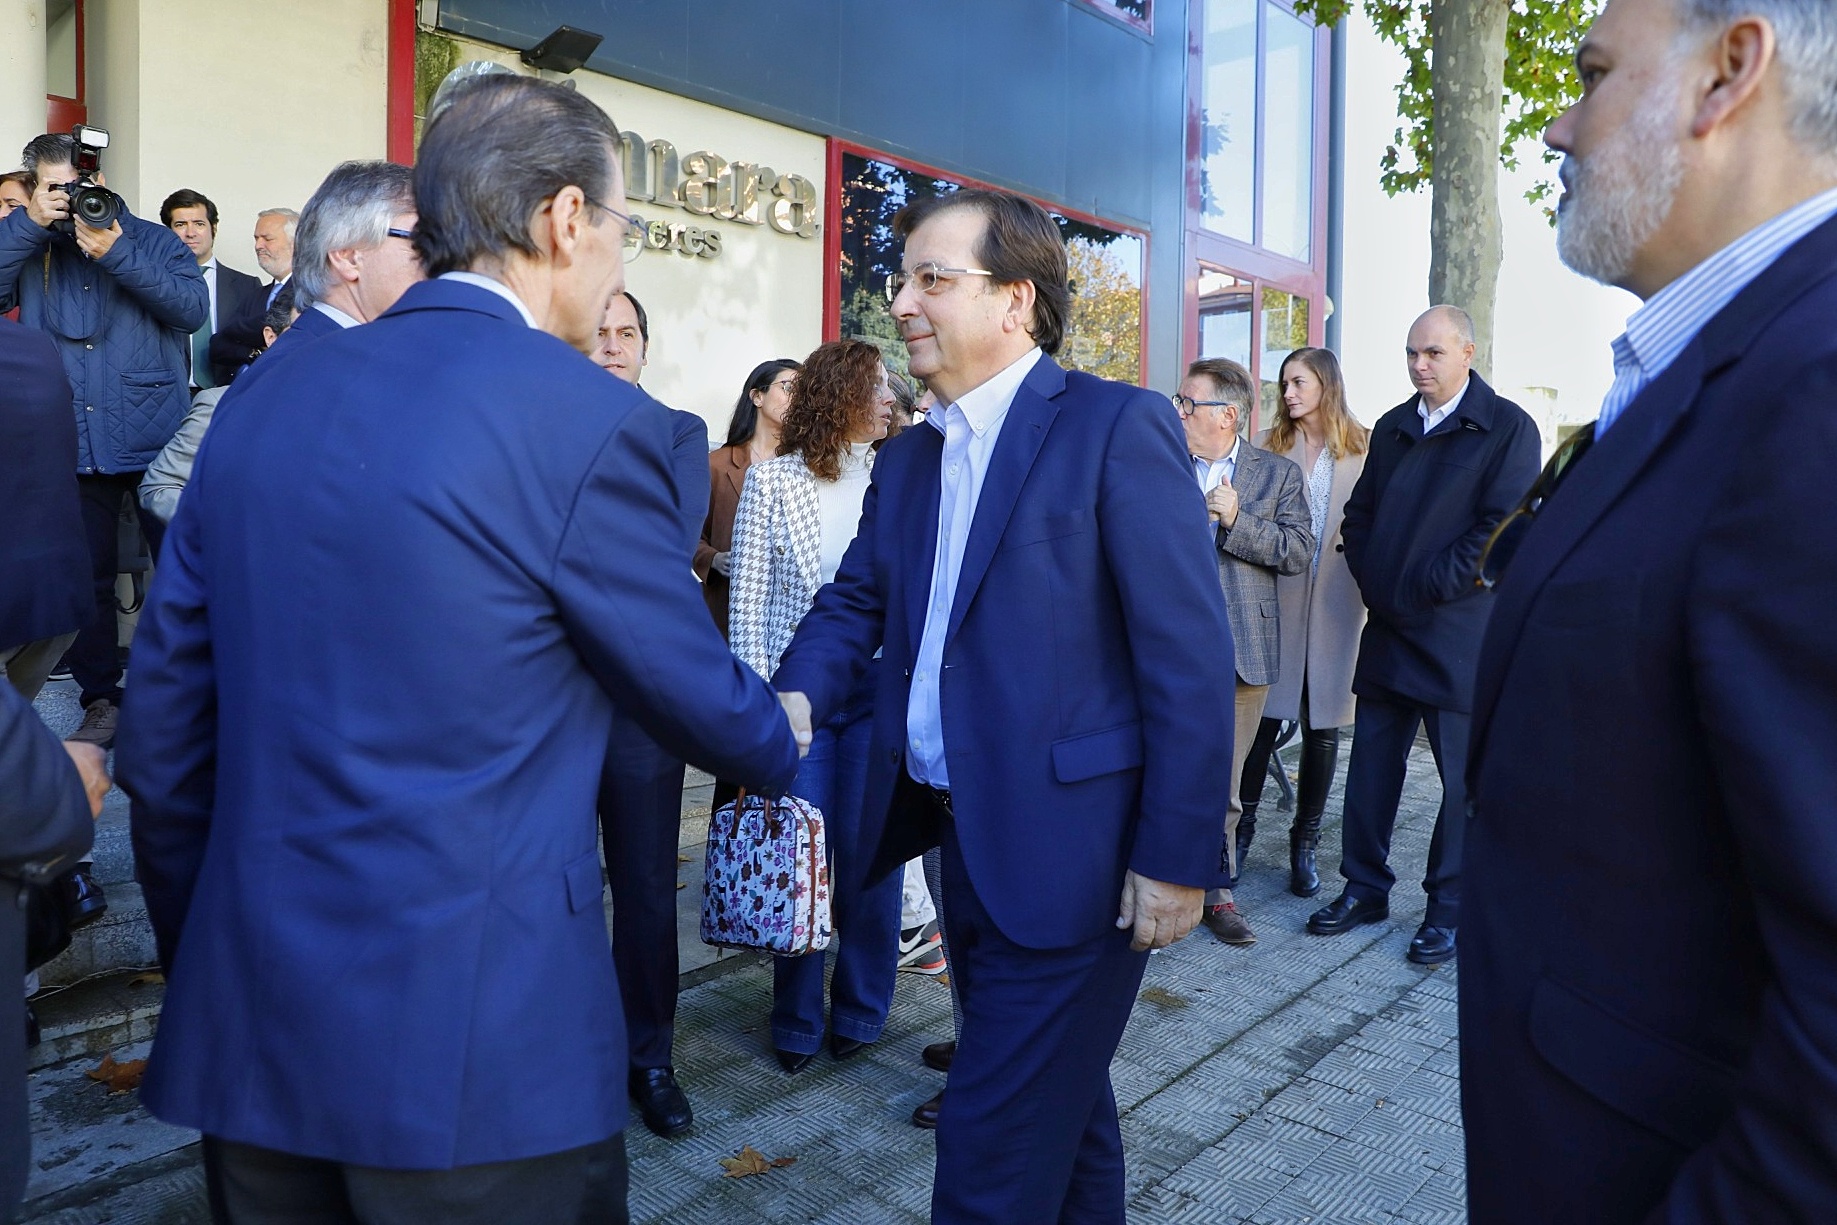 Foto del presidente de la Junta de Extremadura saludando a autoridades